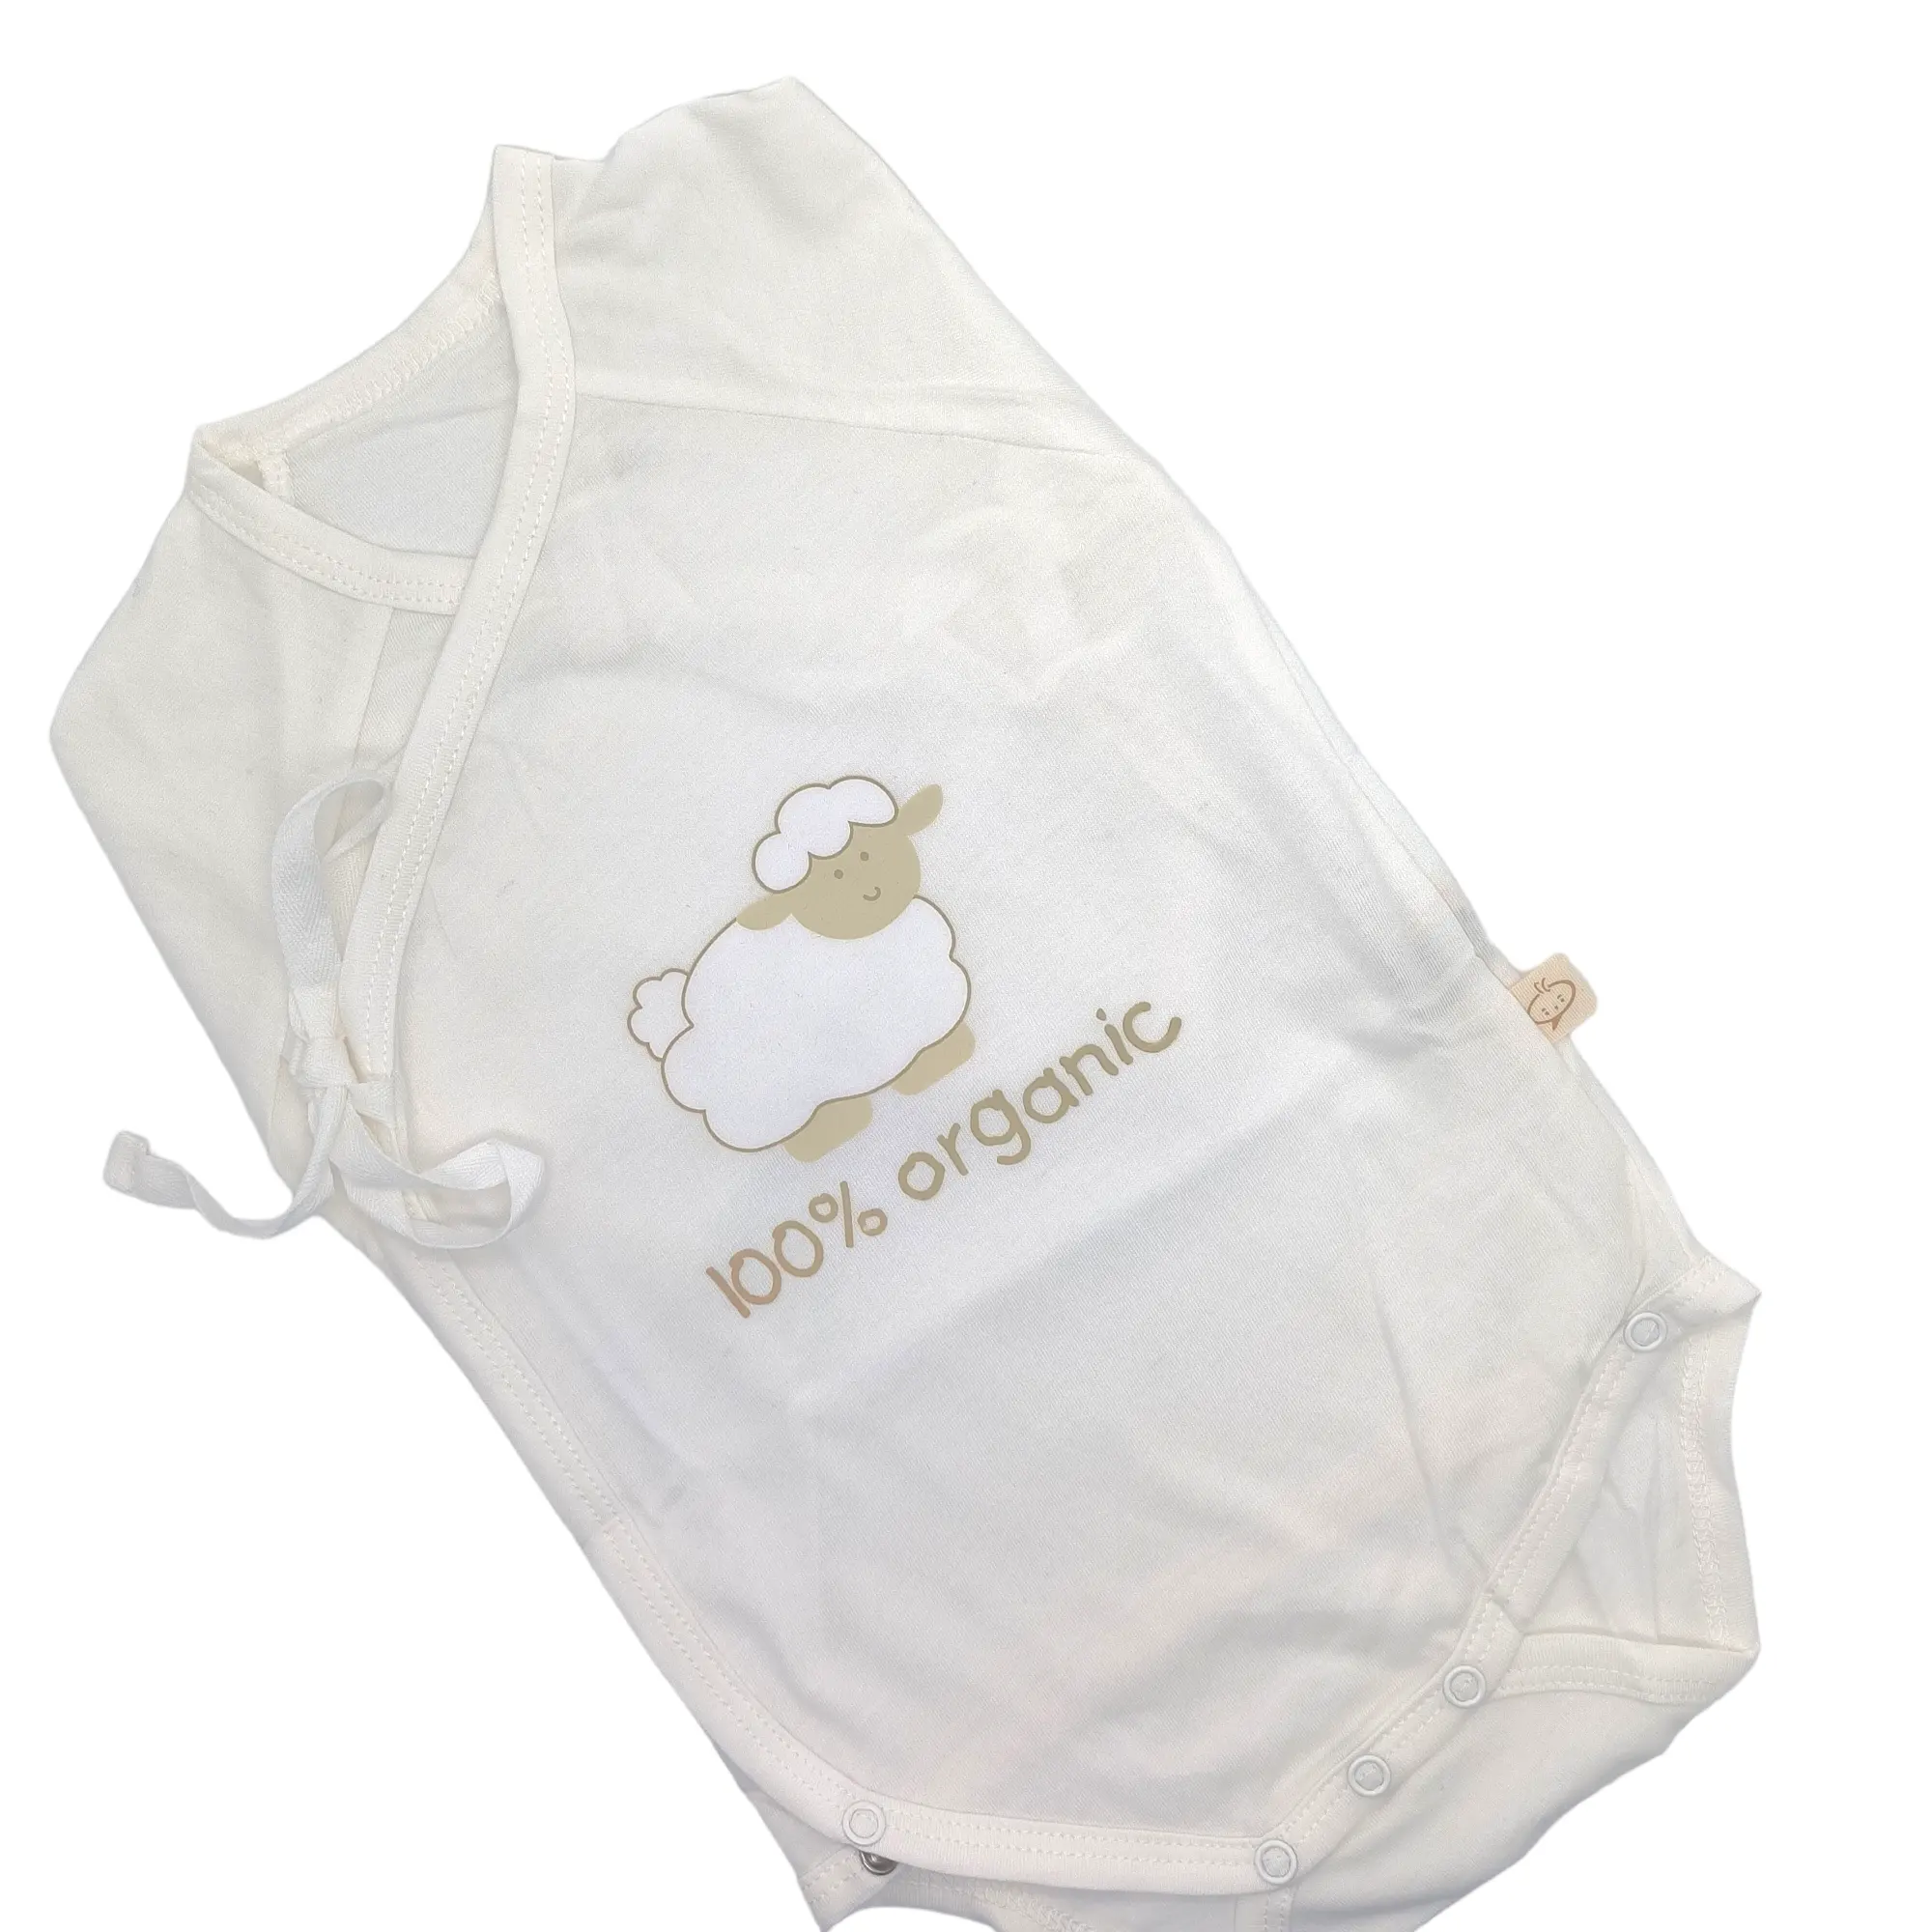 Pakaian bayi pakaian bayi Bodysuit Bayi Romper bayi nyaman Customzies lengan panjang musim panas Unisex domba dukungan